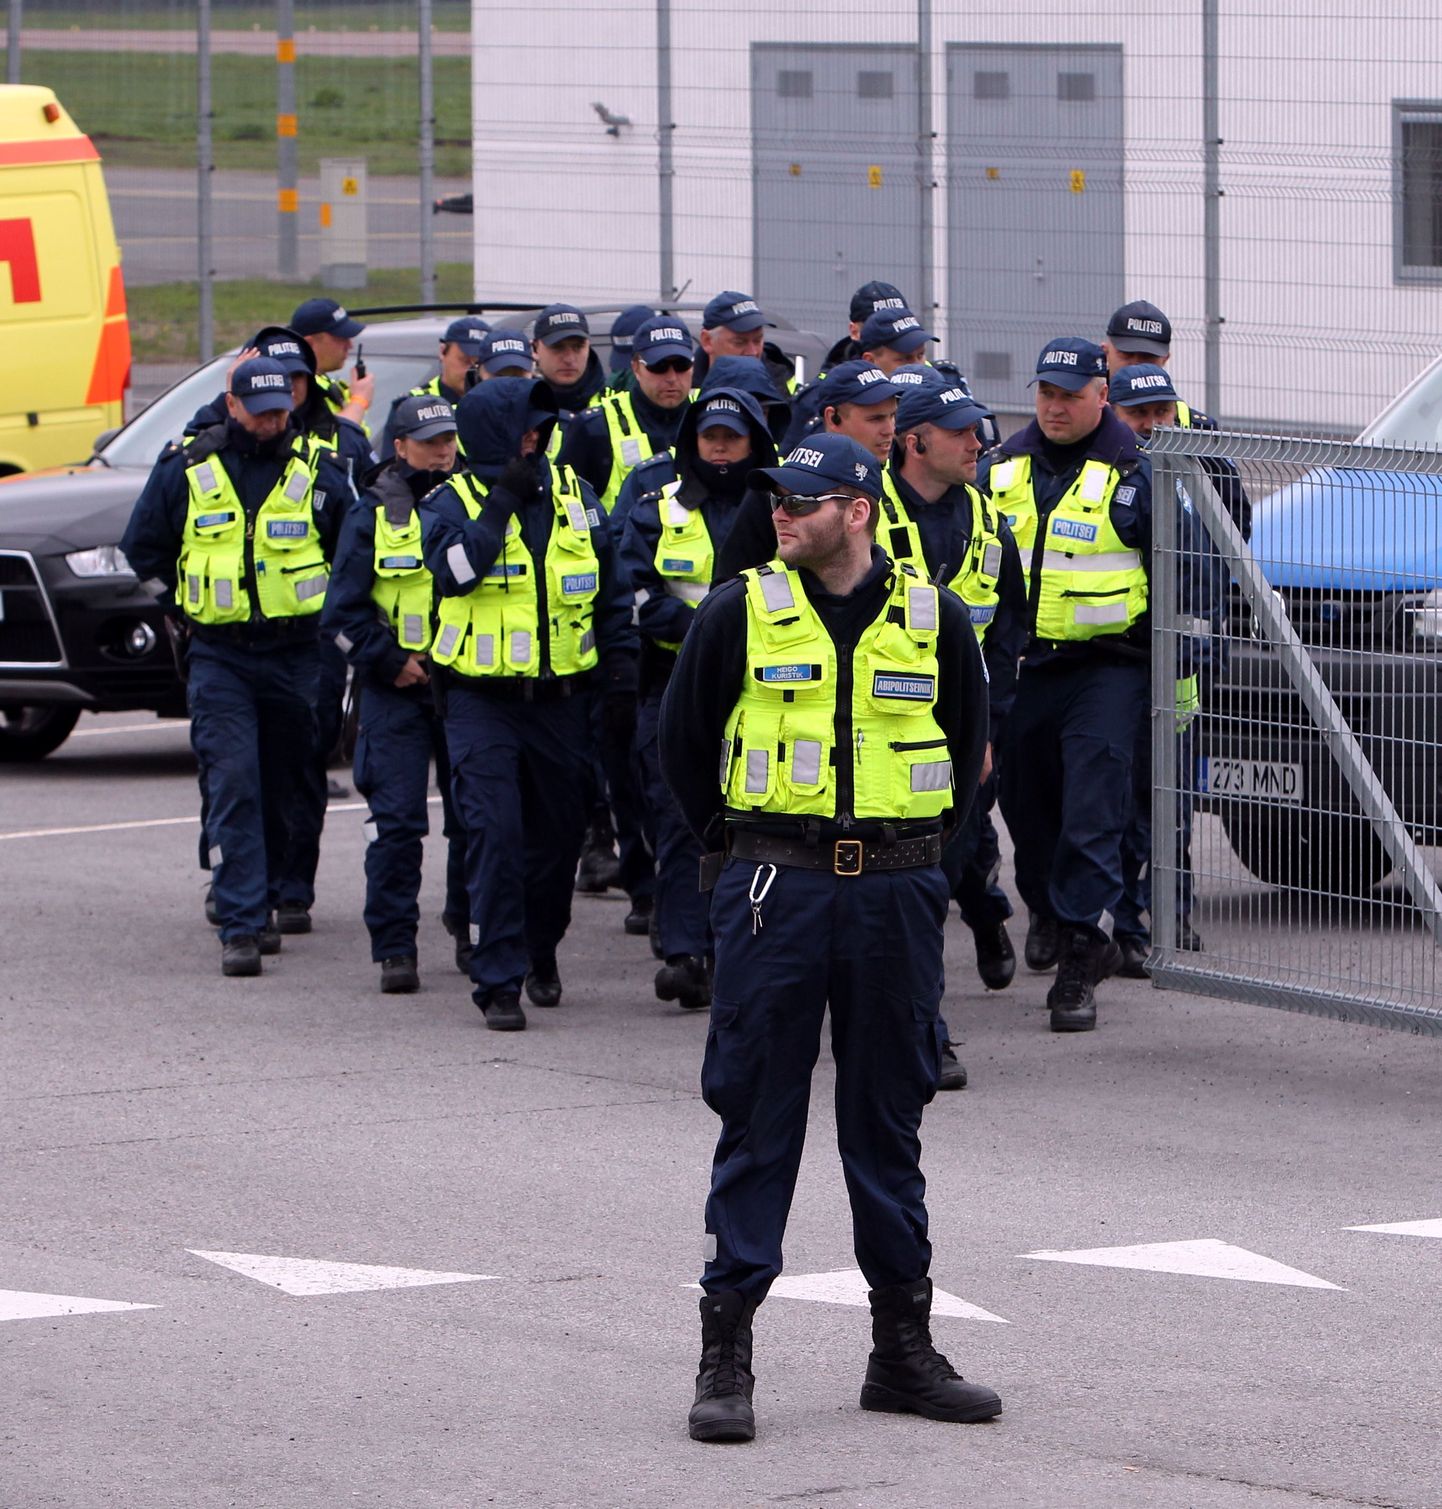 Õppus EU Cremex  Tallinna lennujaamas. Politseinikud valmstuvad.